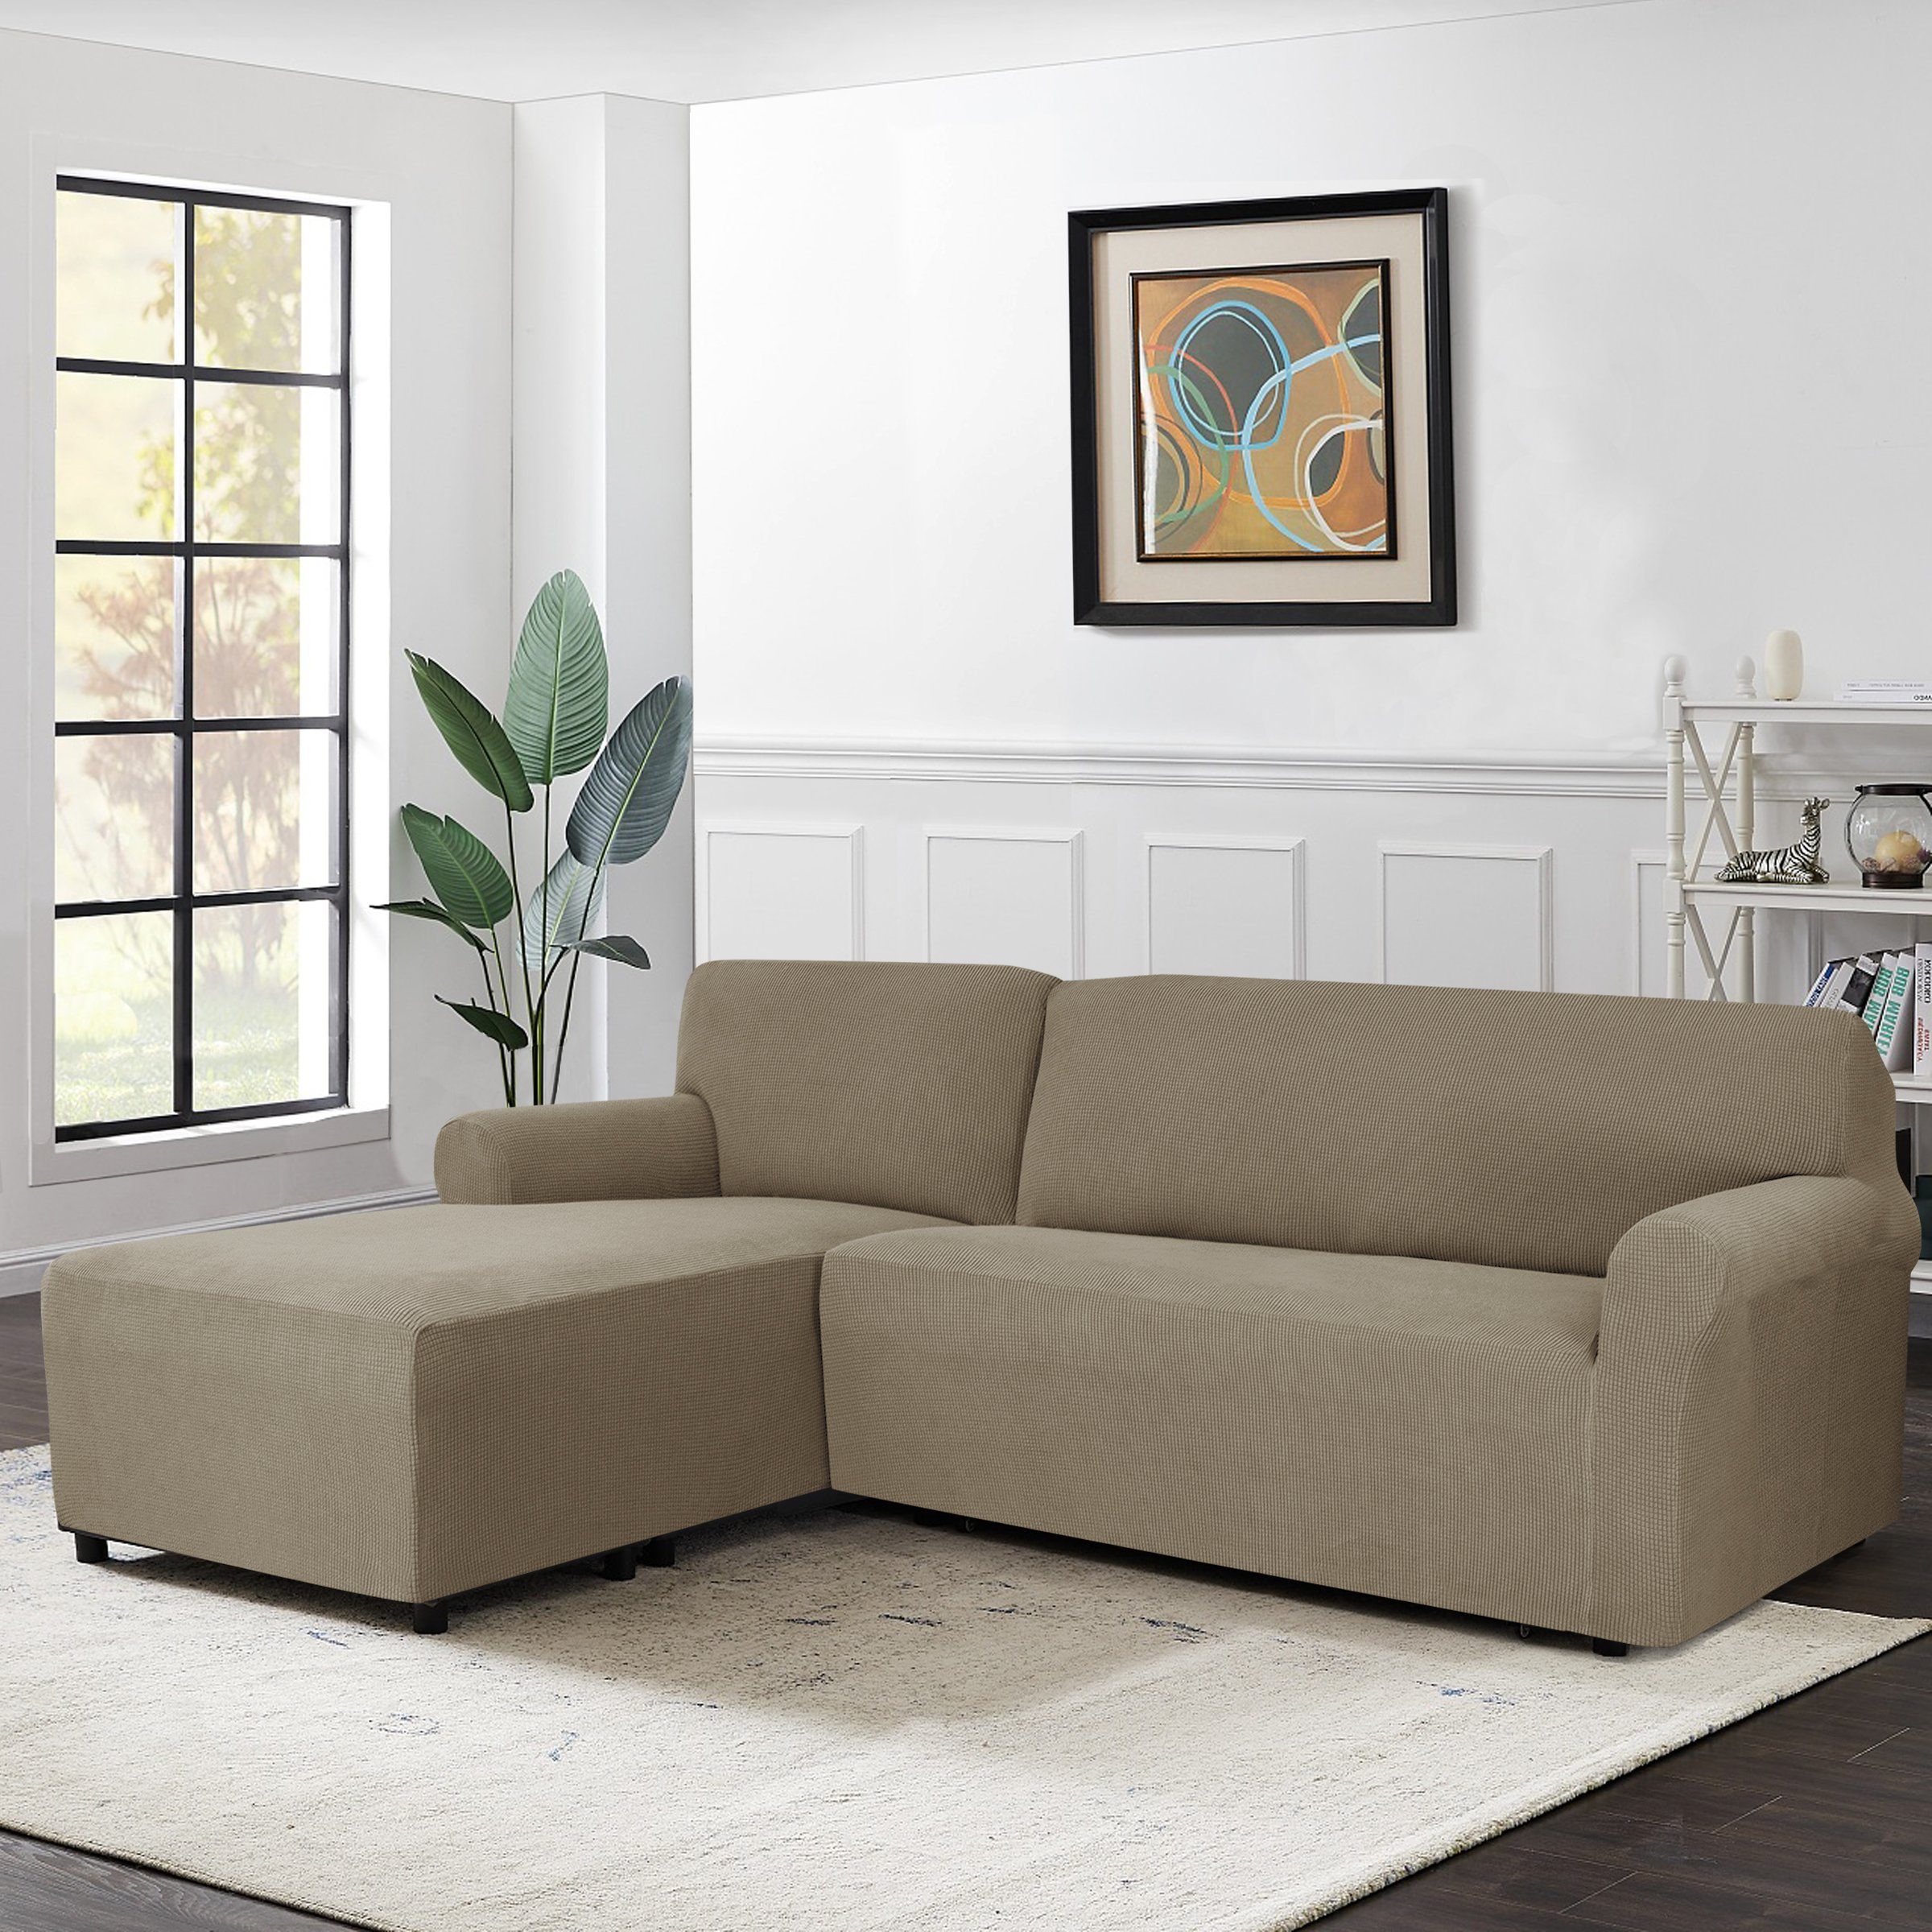 Sofahusse »CHUNYI Elastisch L Form Sofabezug«, CHUNYI, mit leichtern  Struktur-Effekt, Stretchstoffe online kaufen | OTTO